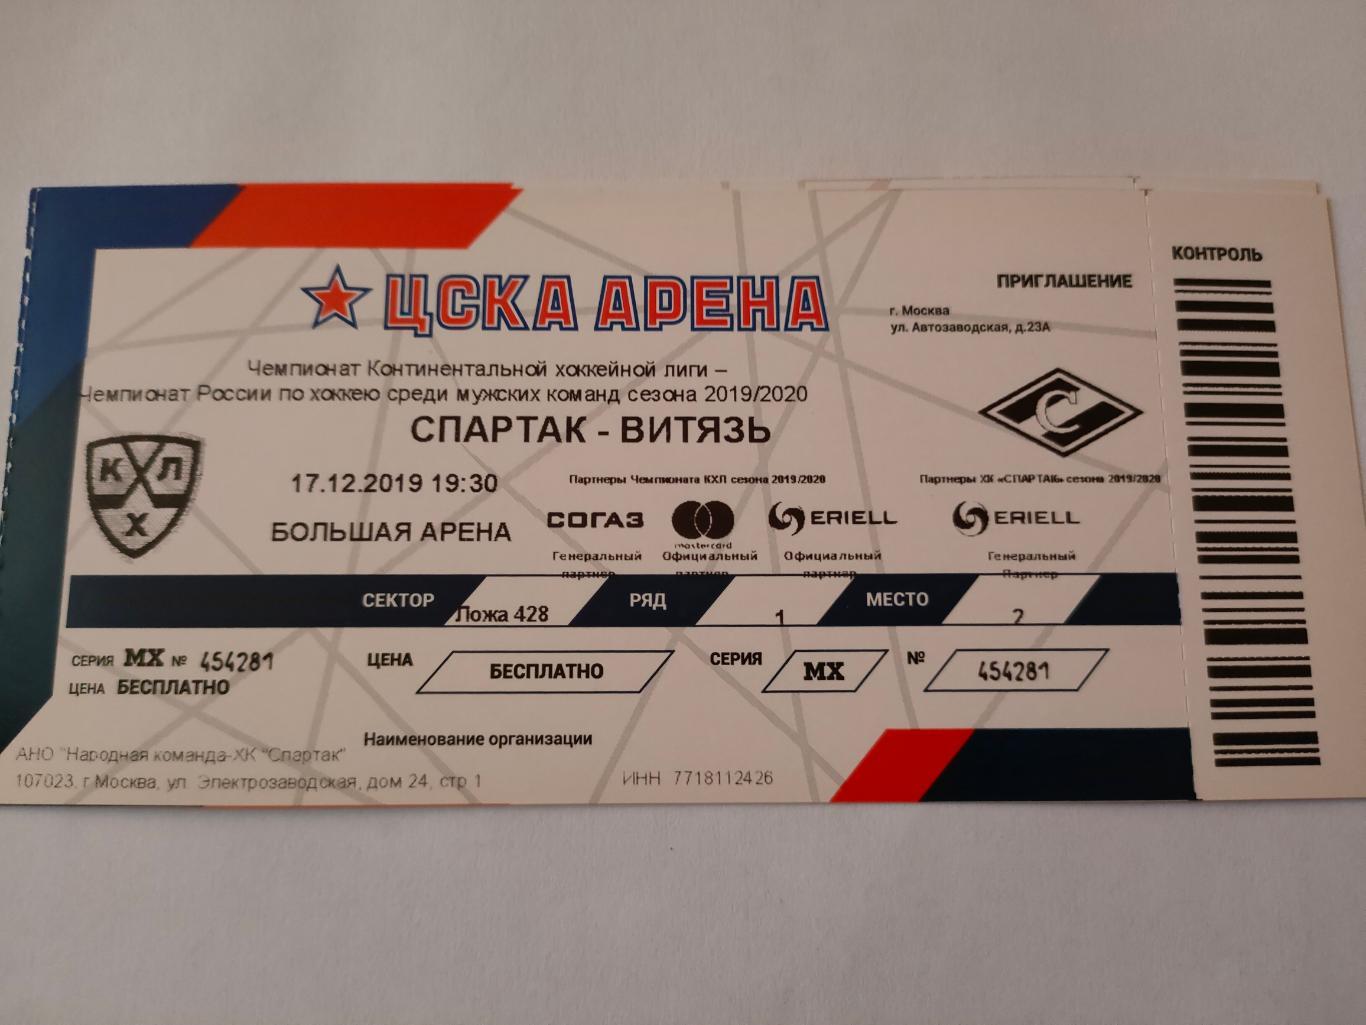 2019 / 2020 - Спартак vs Амур; Адмирал; Нефтехимик; Витязь 2